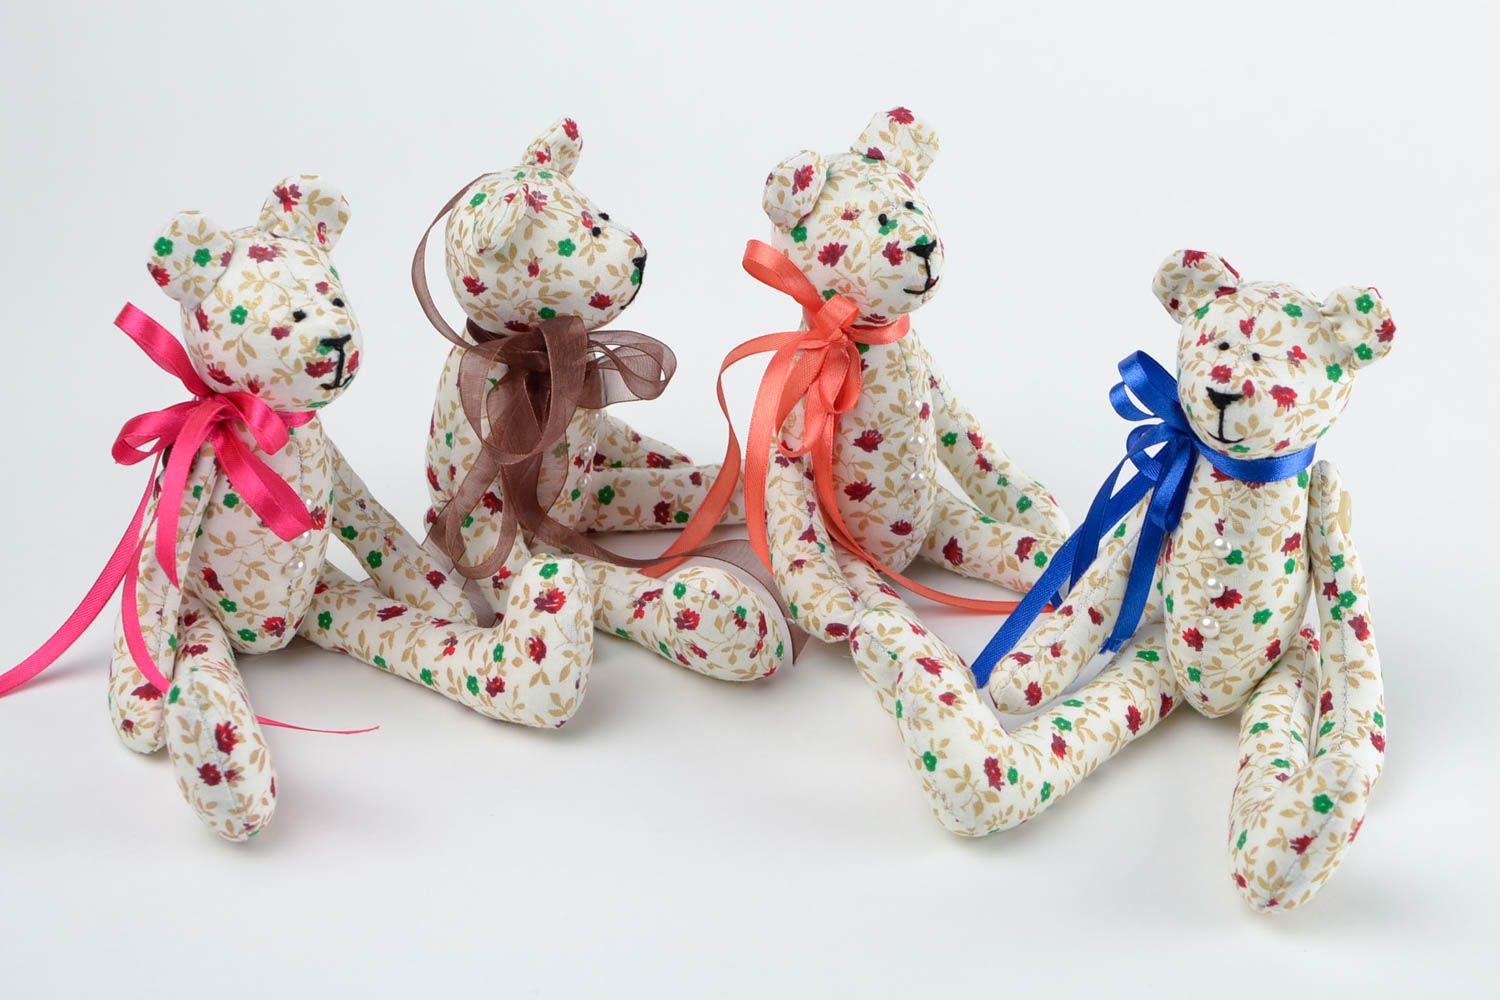 Игрушки мишки набор игрушек ручной работы интересные подарки для детей 4 штуки фото 5